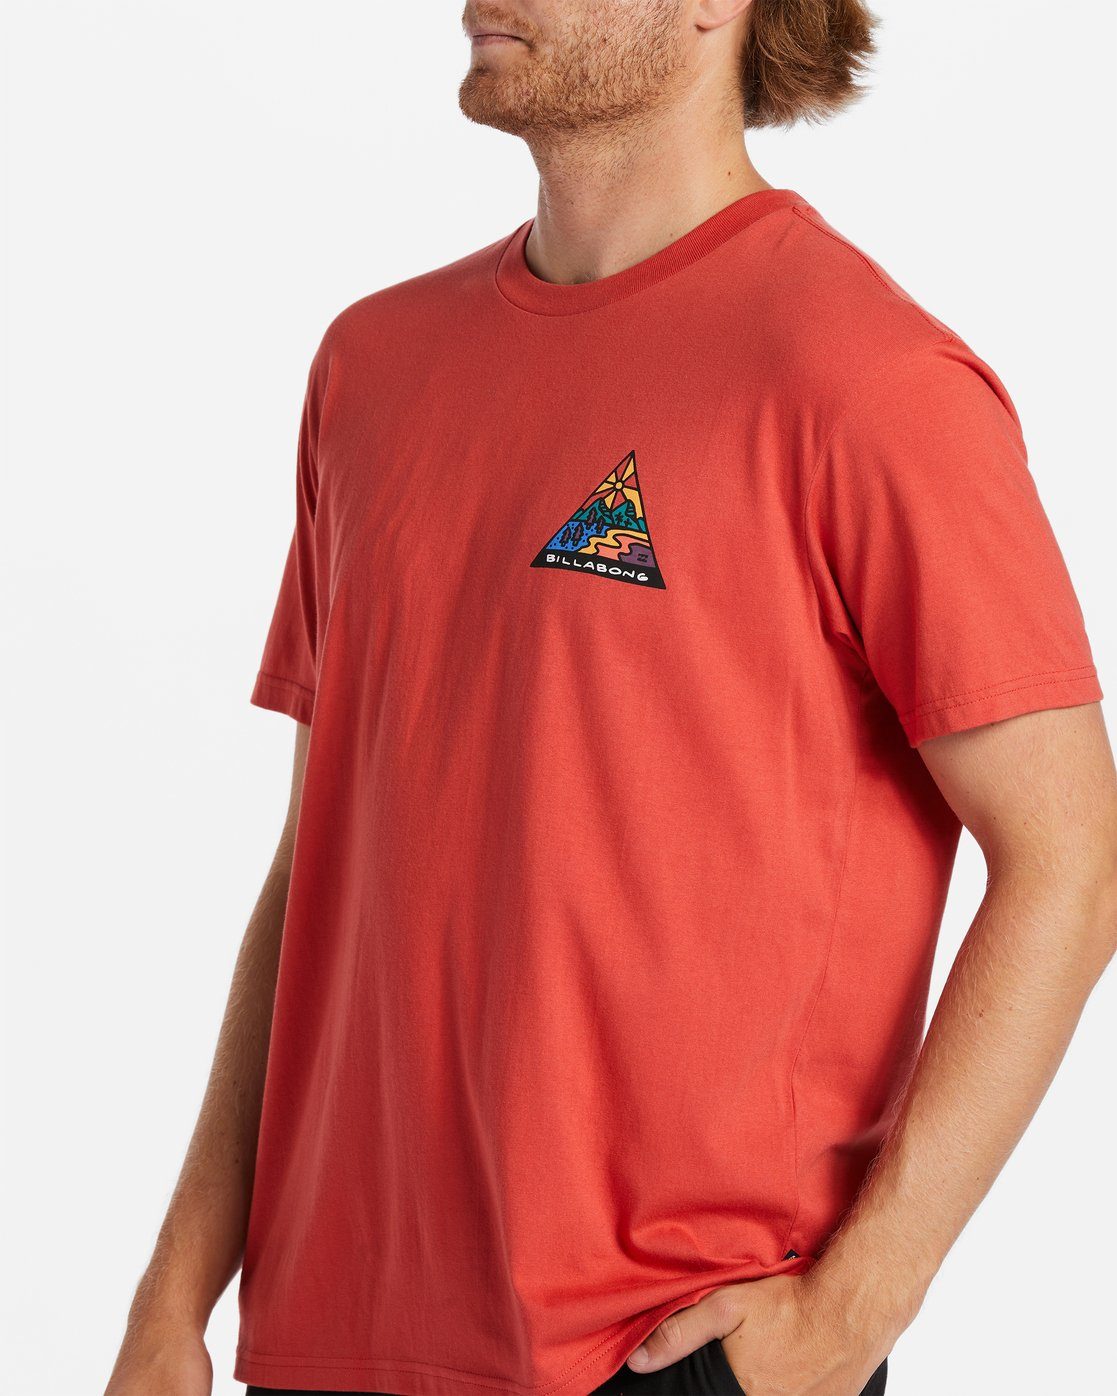 für Shine T-Shirt Billabong - Männer T-Shirt